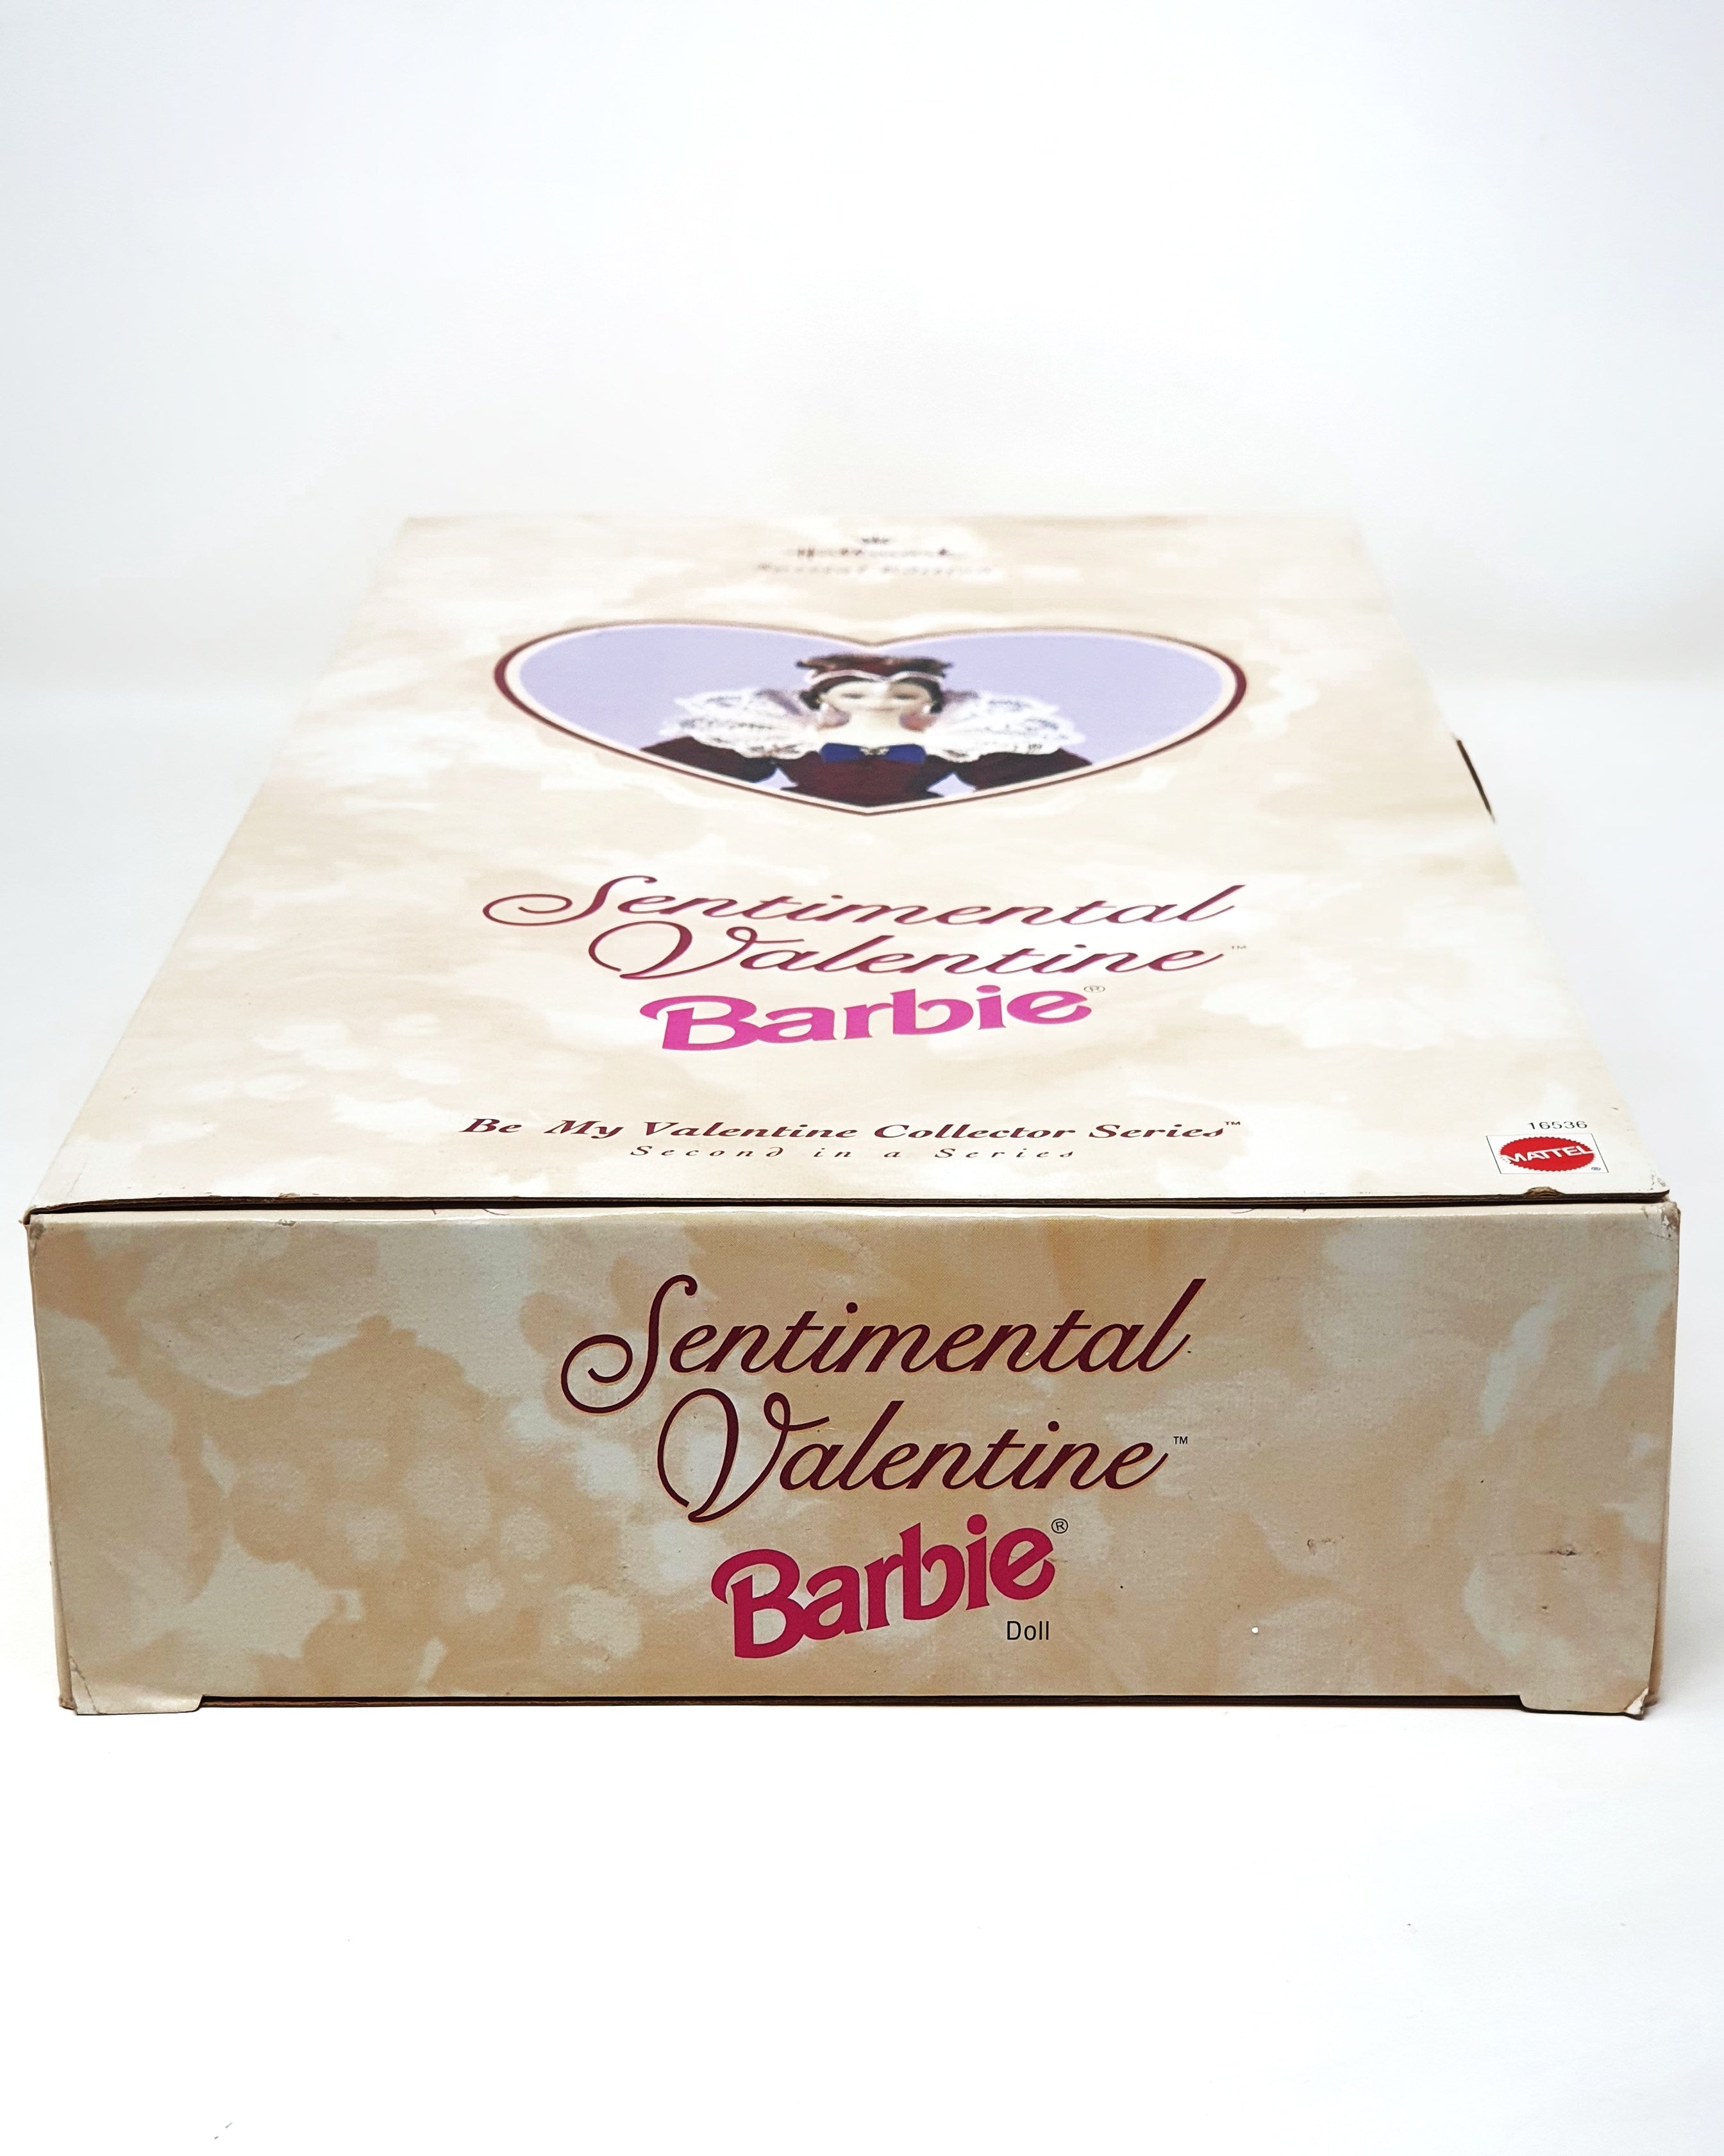 Hallmark Sentimental Valentine Barbie, Mattel 1996 (NRFB).